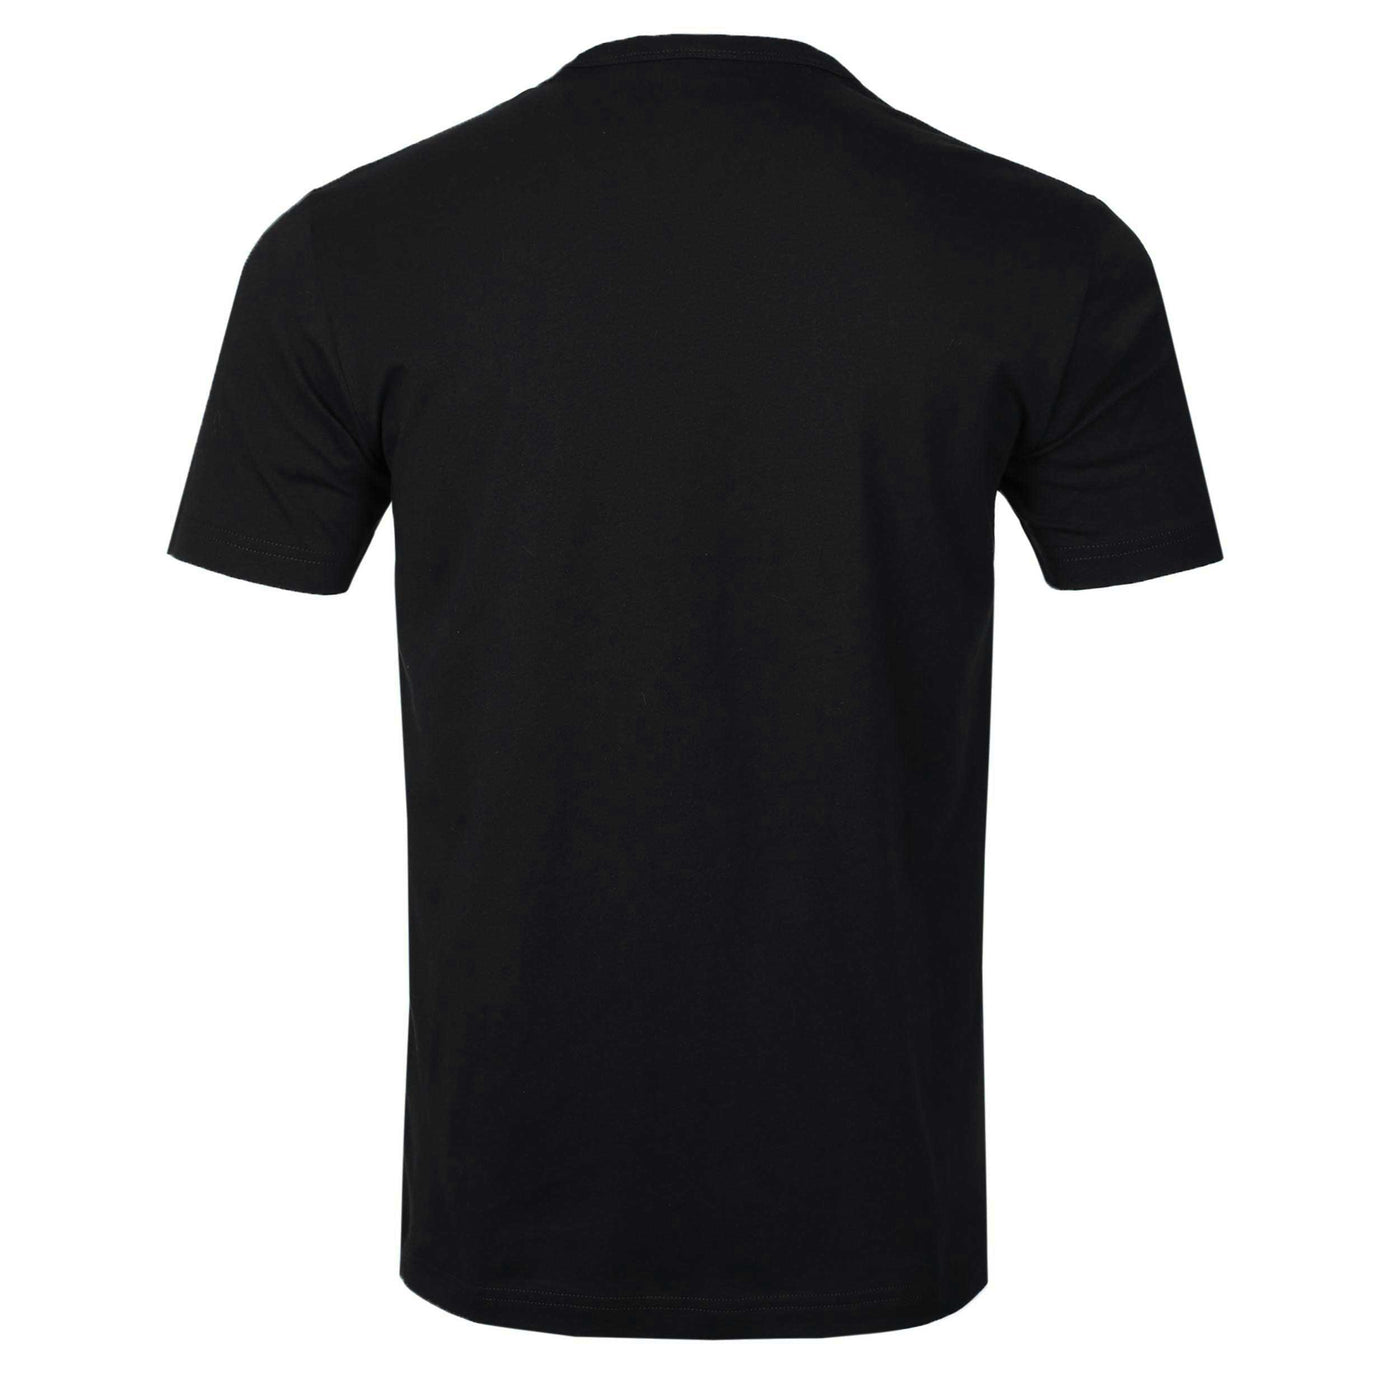 Belstaff Phoenix T Shirt in Black Back